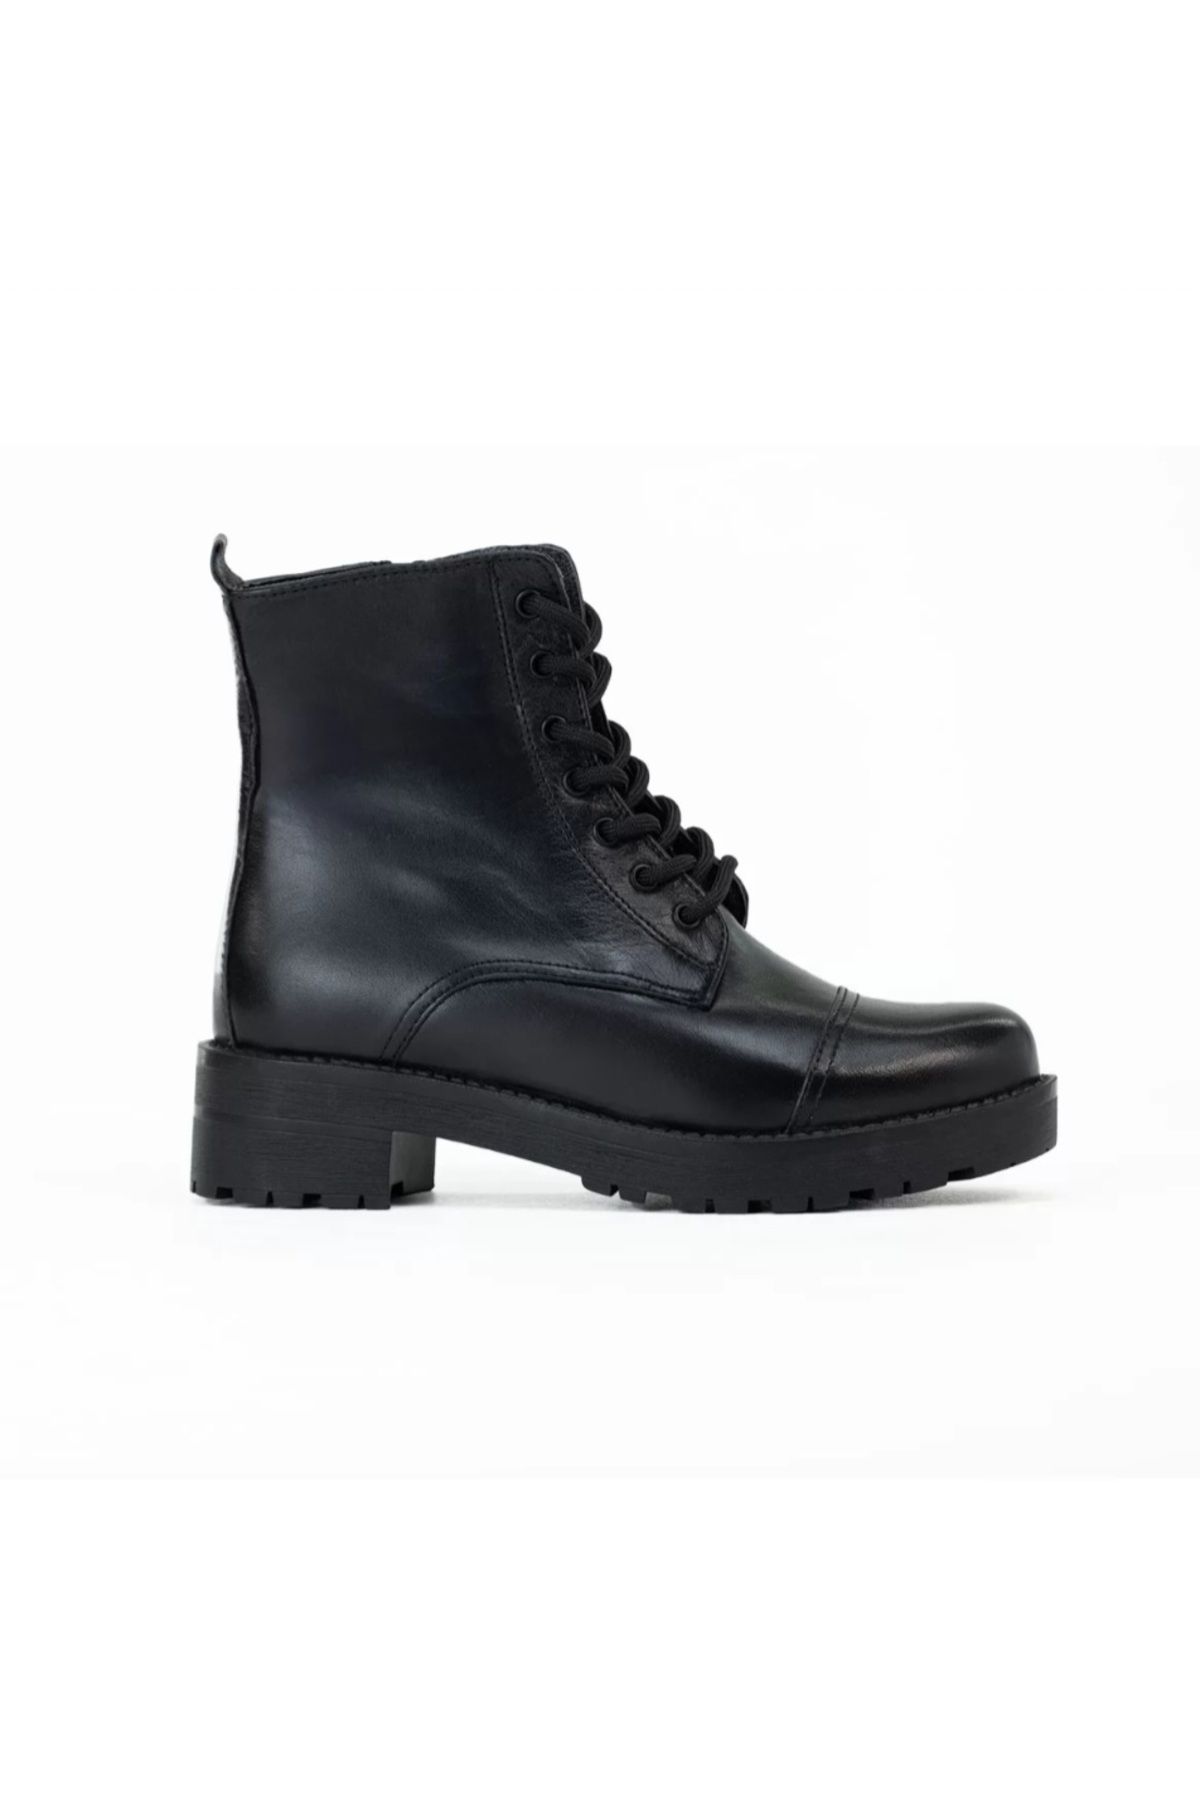 Onur Classic siyah postal erkek / kadın günlük ayakkabı